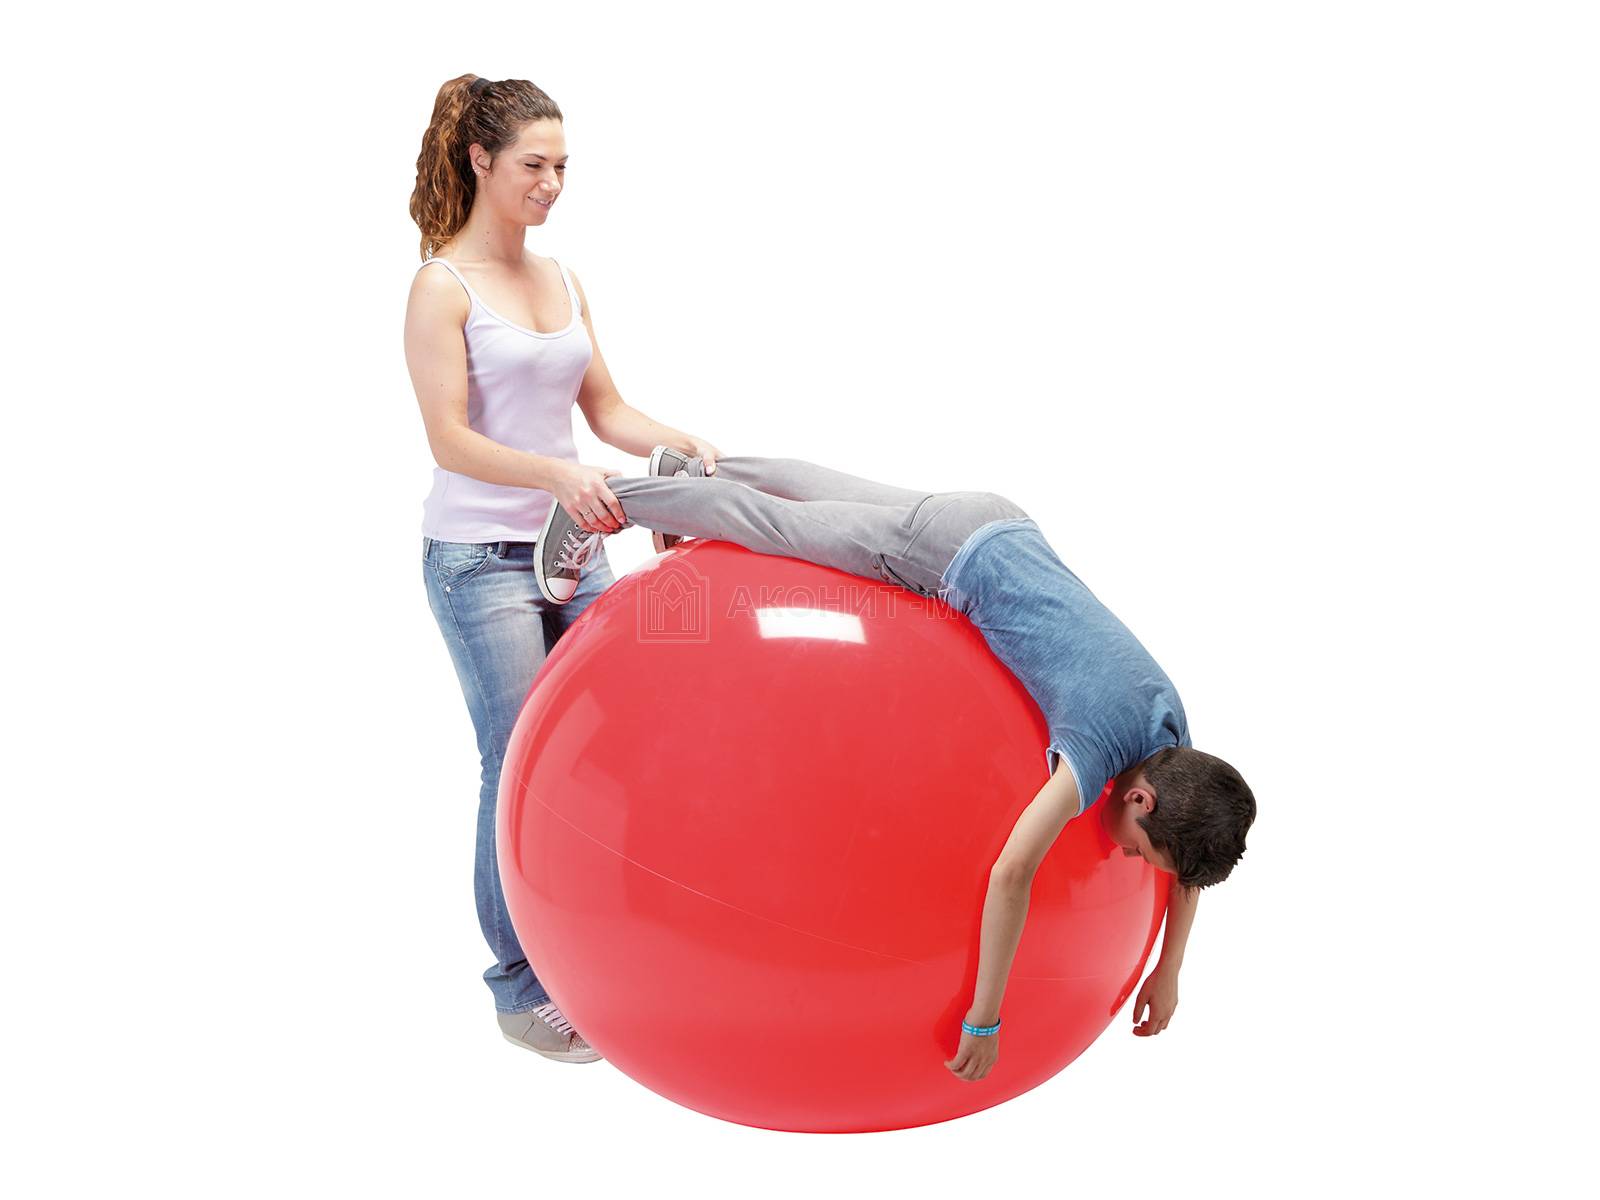 Мяч гимнастический для фитнеса "Гимник" (фитбол), диам. 85 см красный